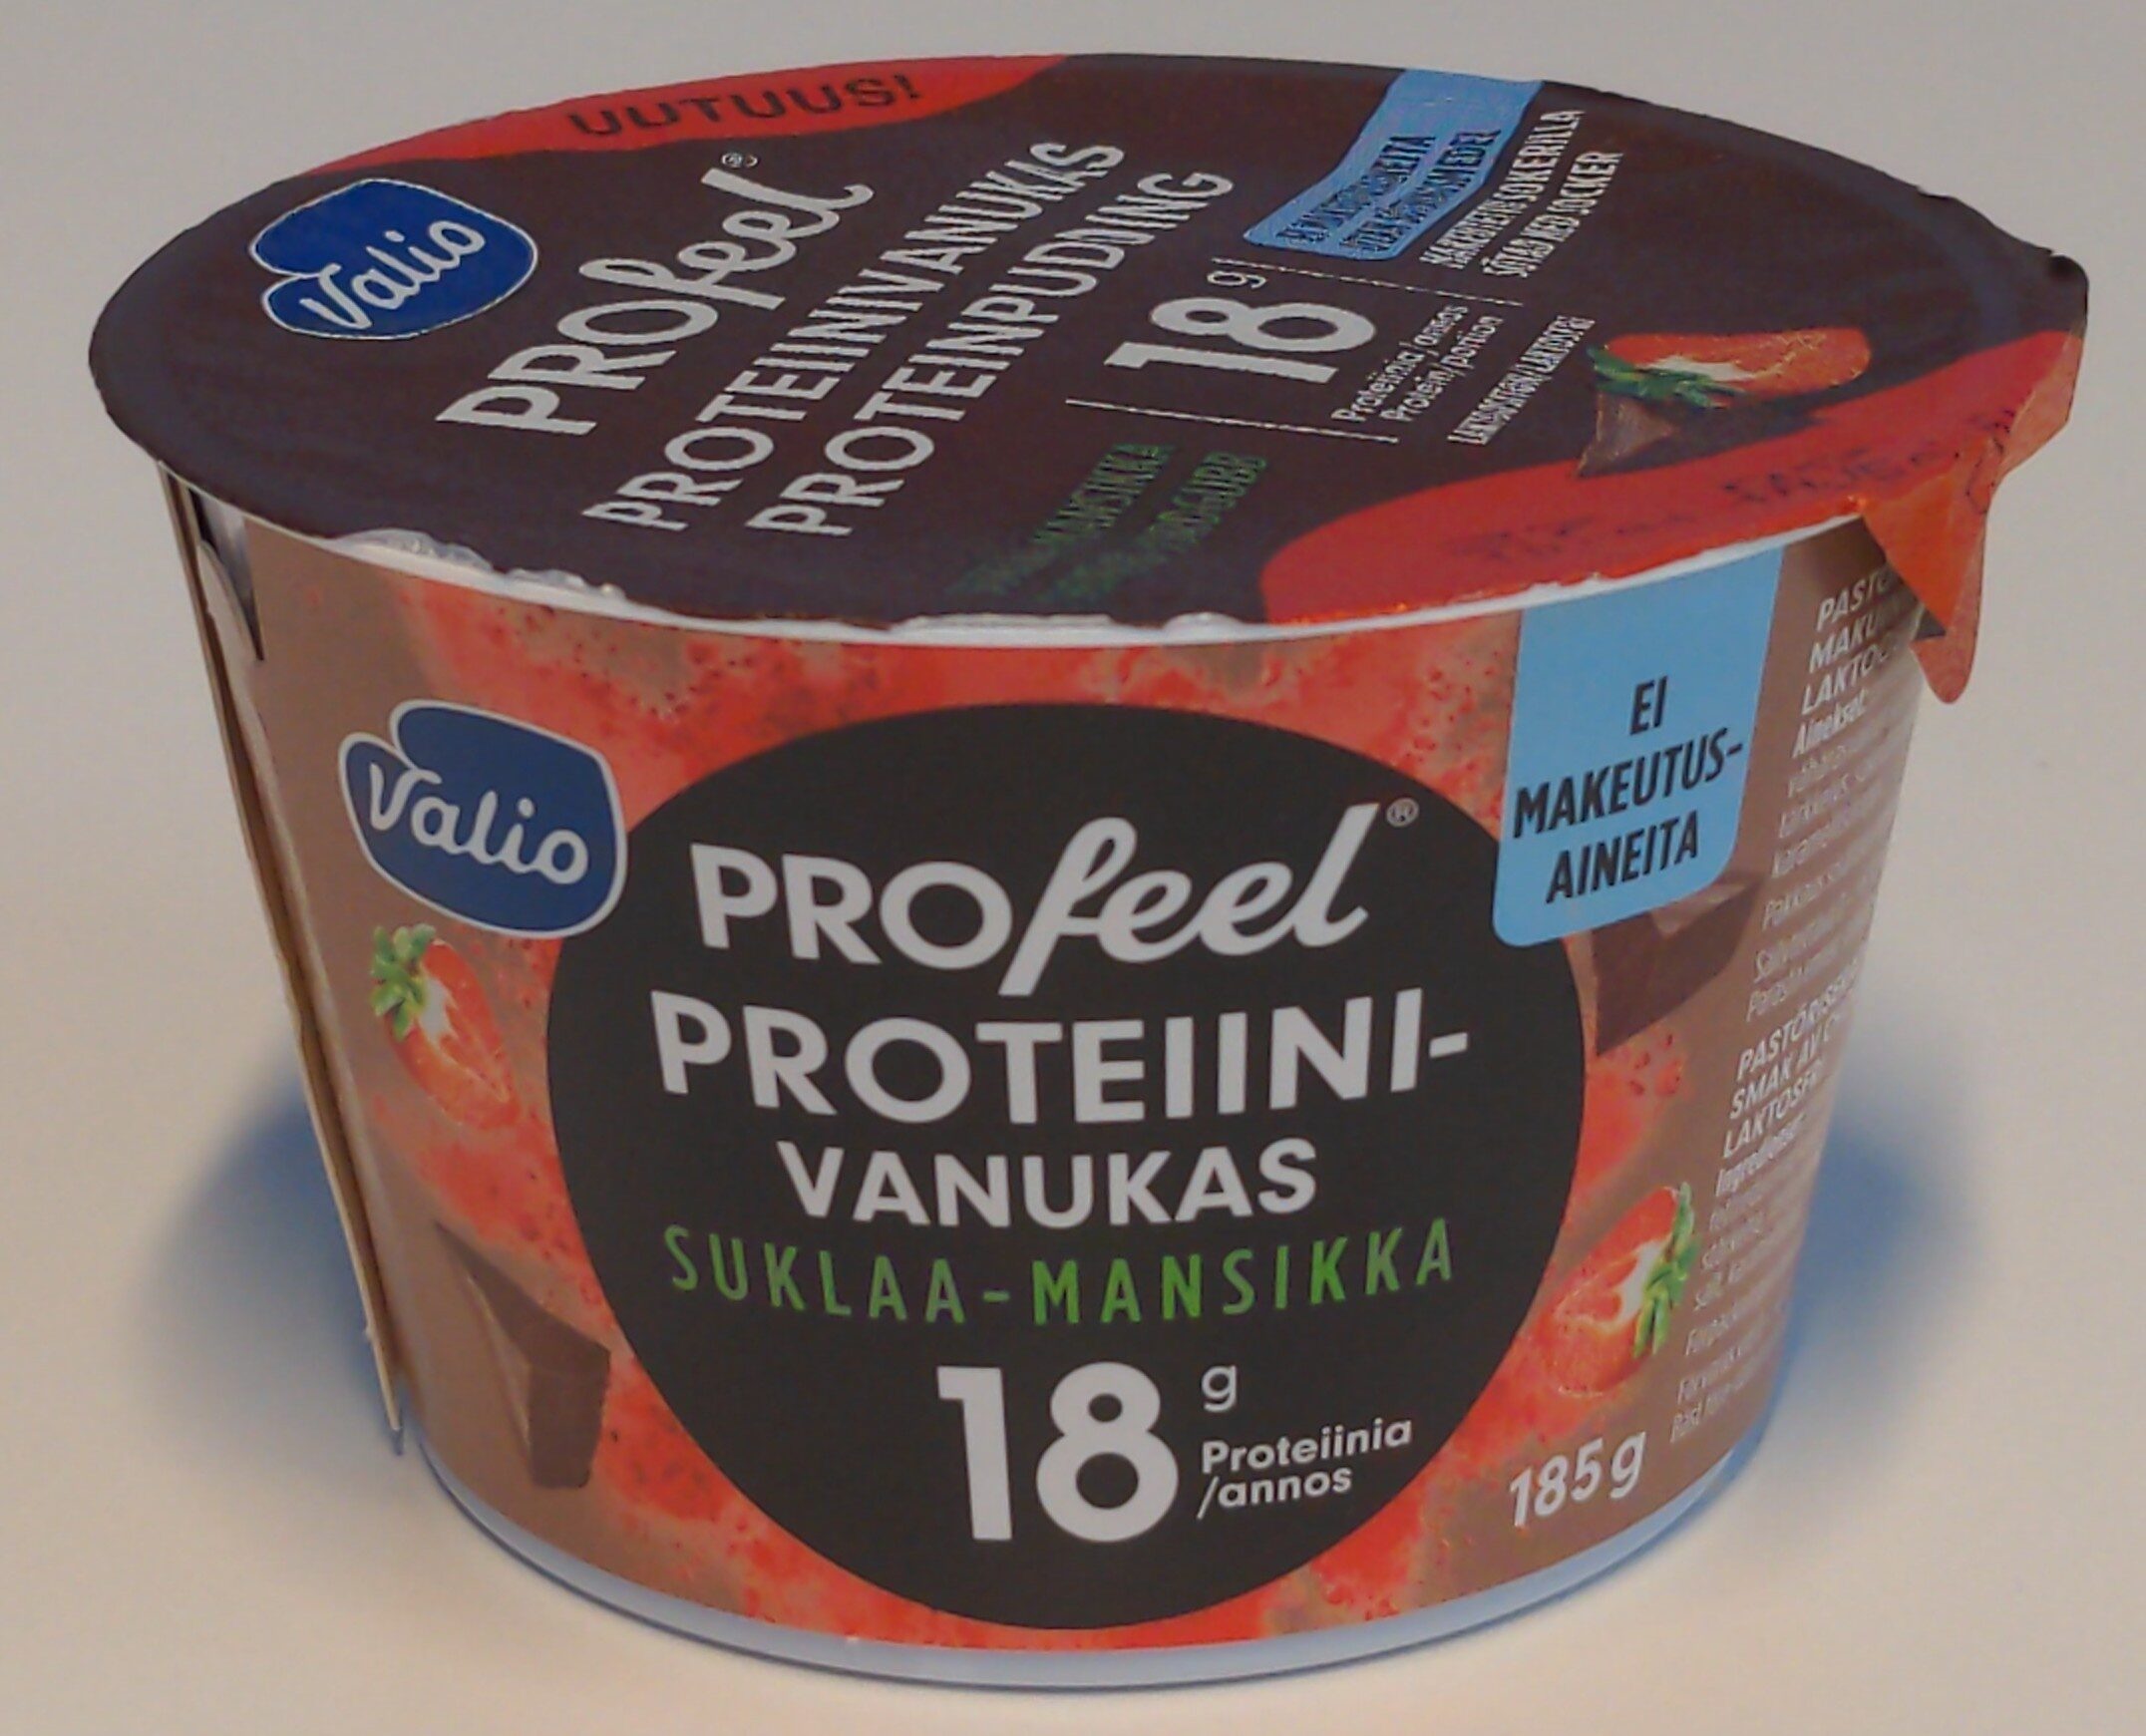 PROfeel proteiinivanukas suklaa-mansikka - Produit - fi